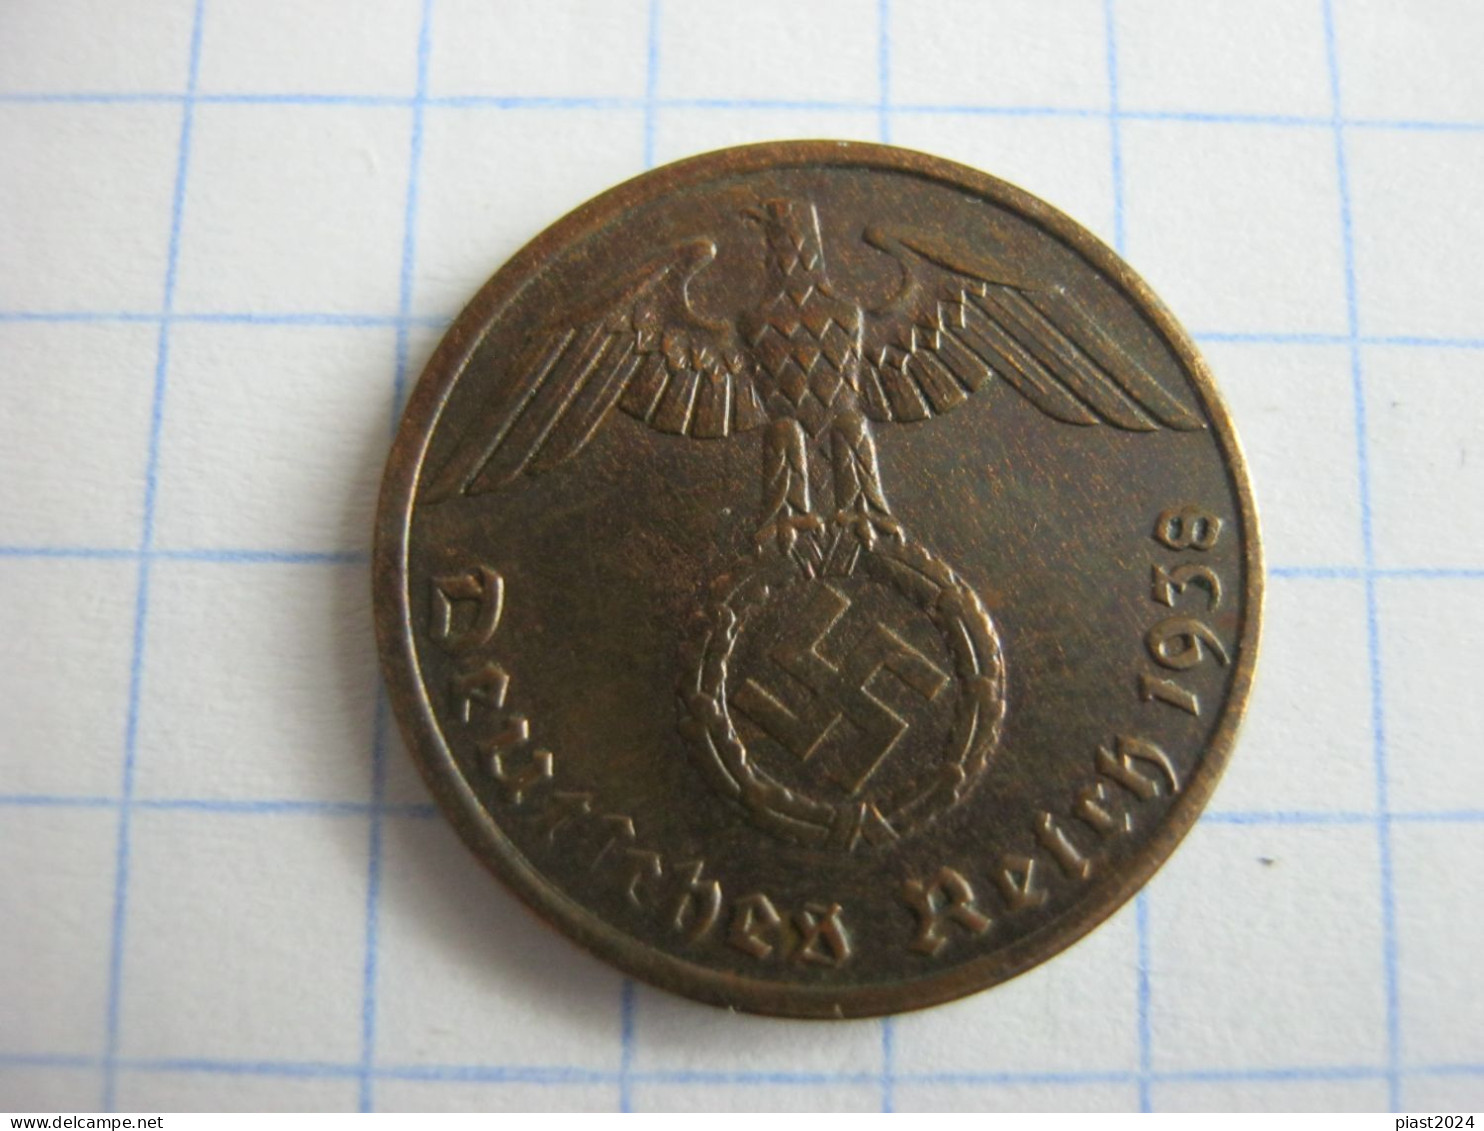 Germany 1 Reichspfennig 1938 A - 1 Reichspfennig